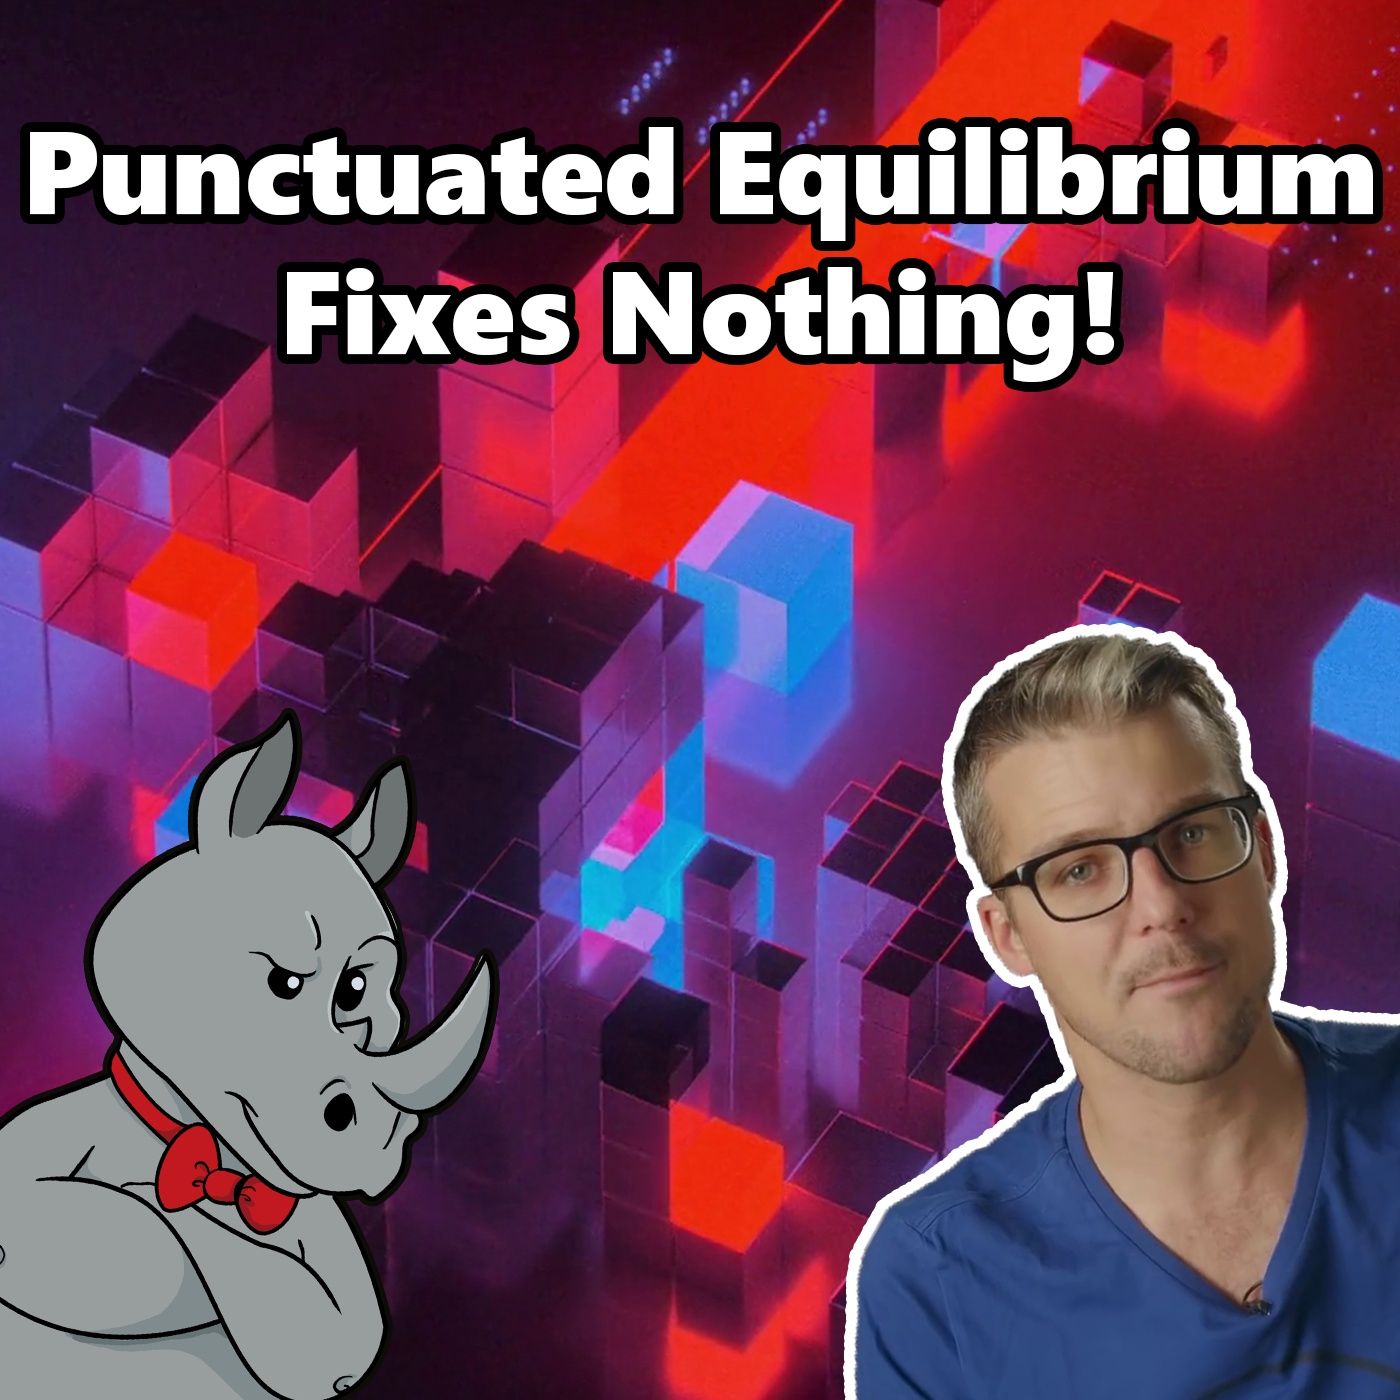 Does Punctuated Equilibrium Fix Evolution?